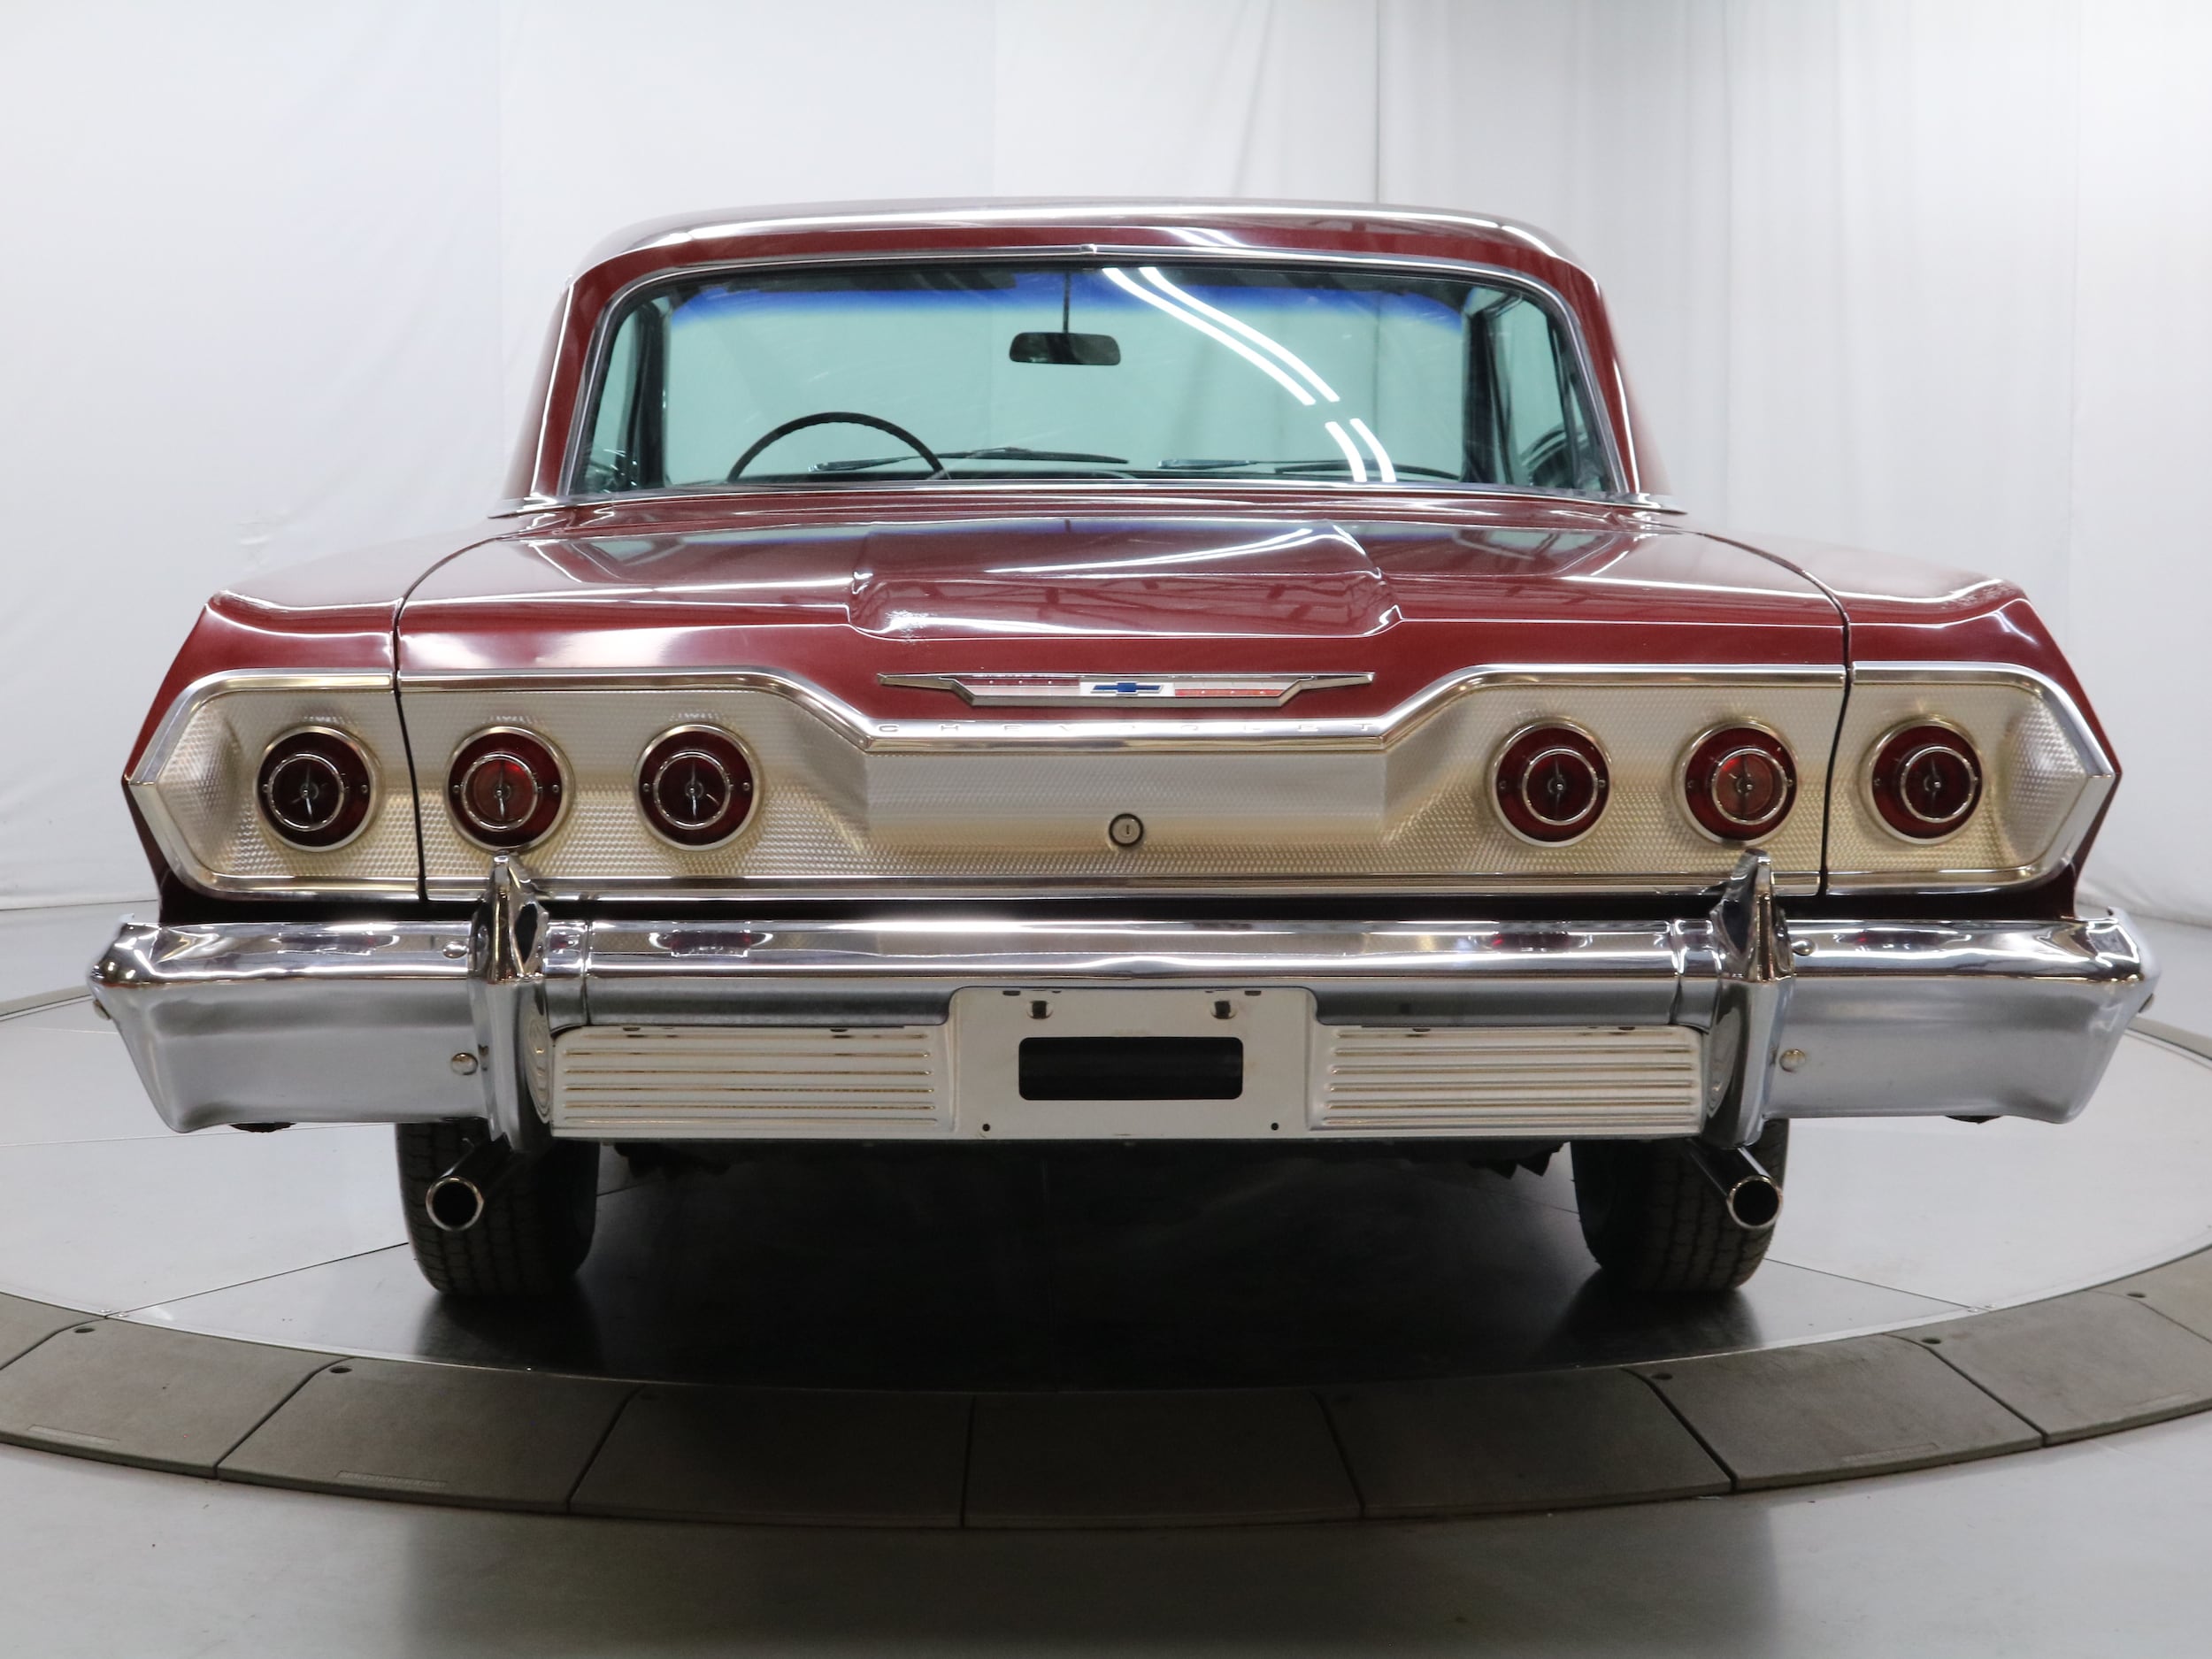 1963 Chevrolet Impala 6